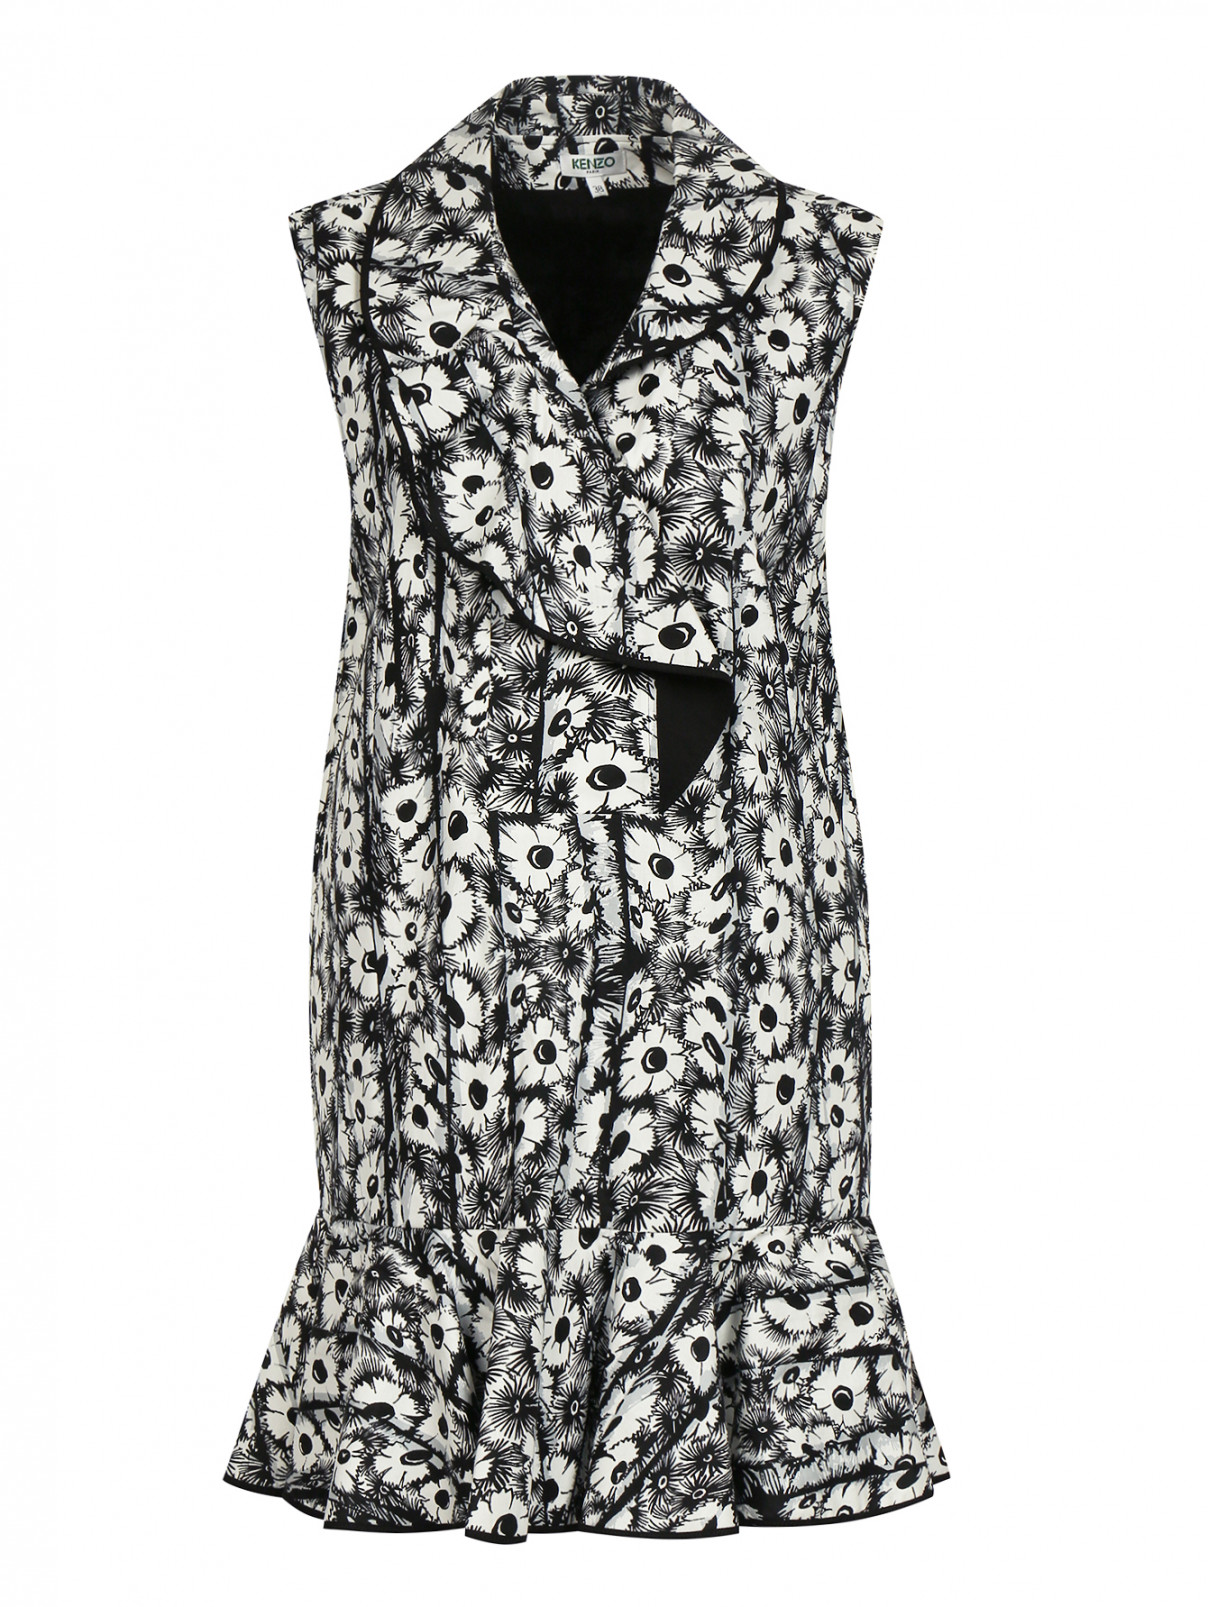 Платье-мини свободного фасона из хлопка с узором Kenzo  –  Общий вид  – Цвет:  Черный